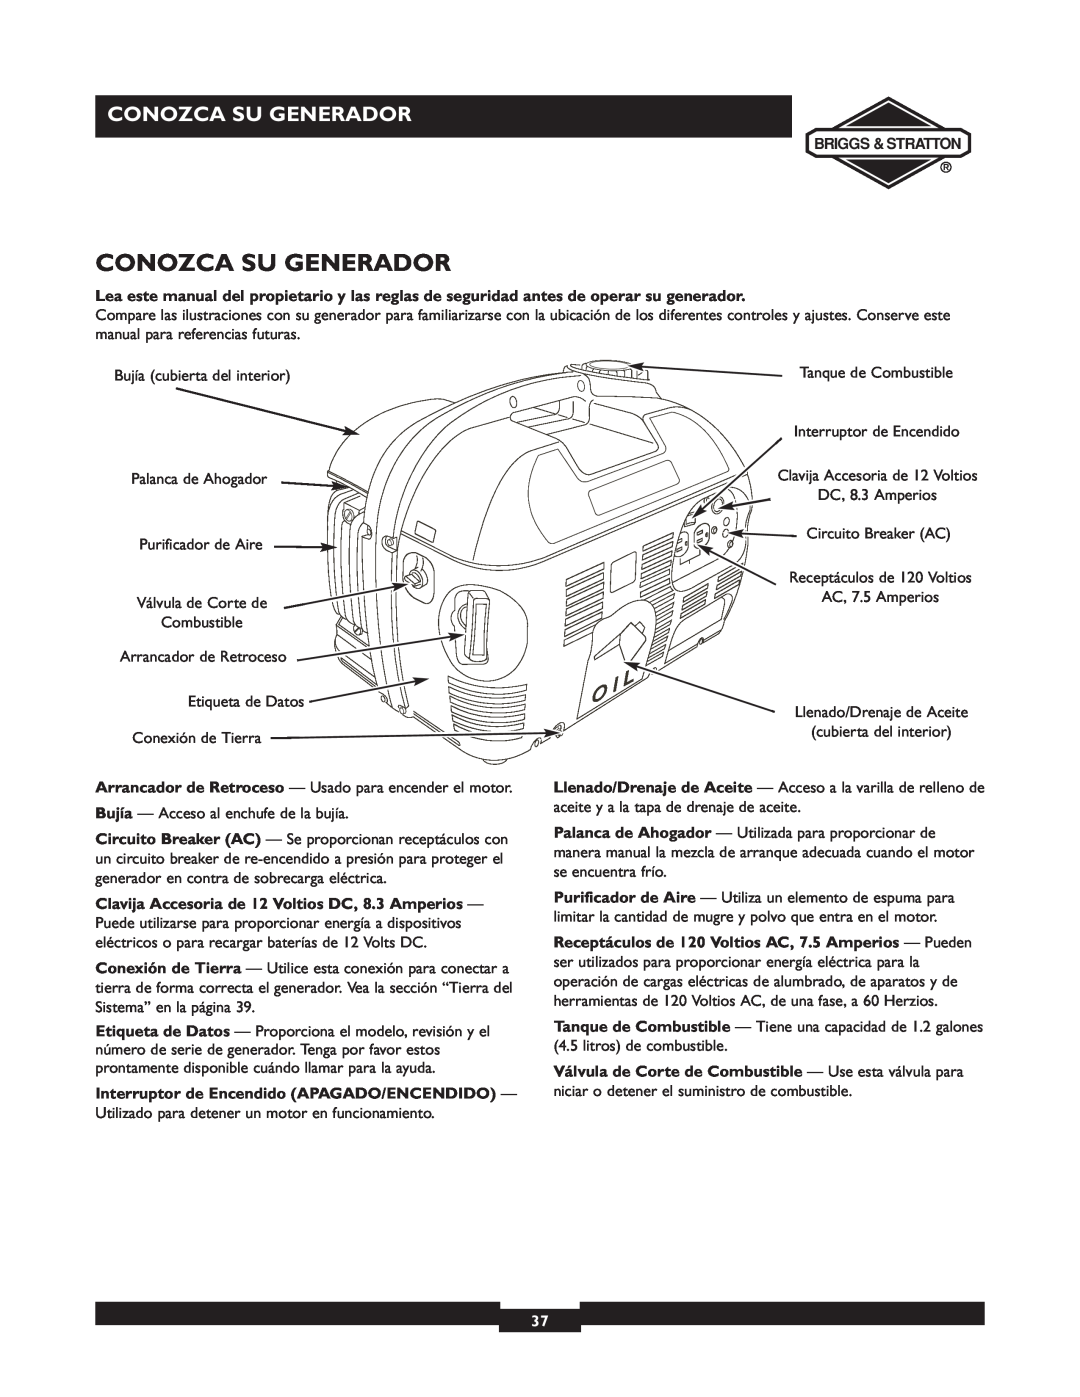 Briggs & Stratton 01532-4 owner manual Conozca Su Generador 